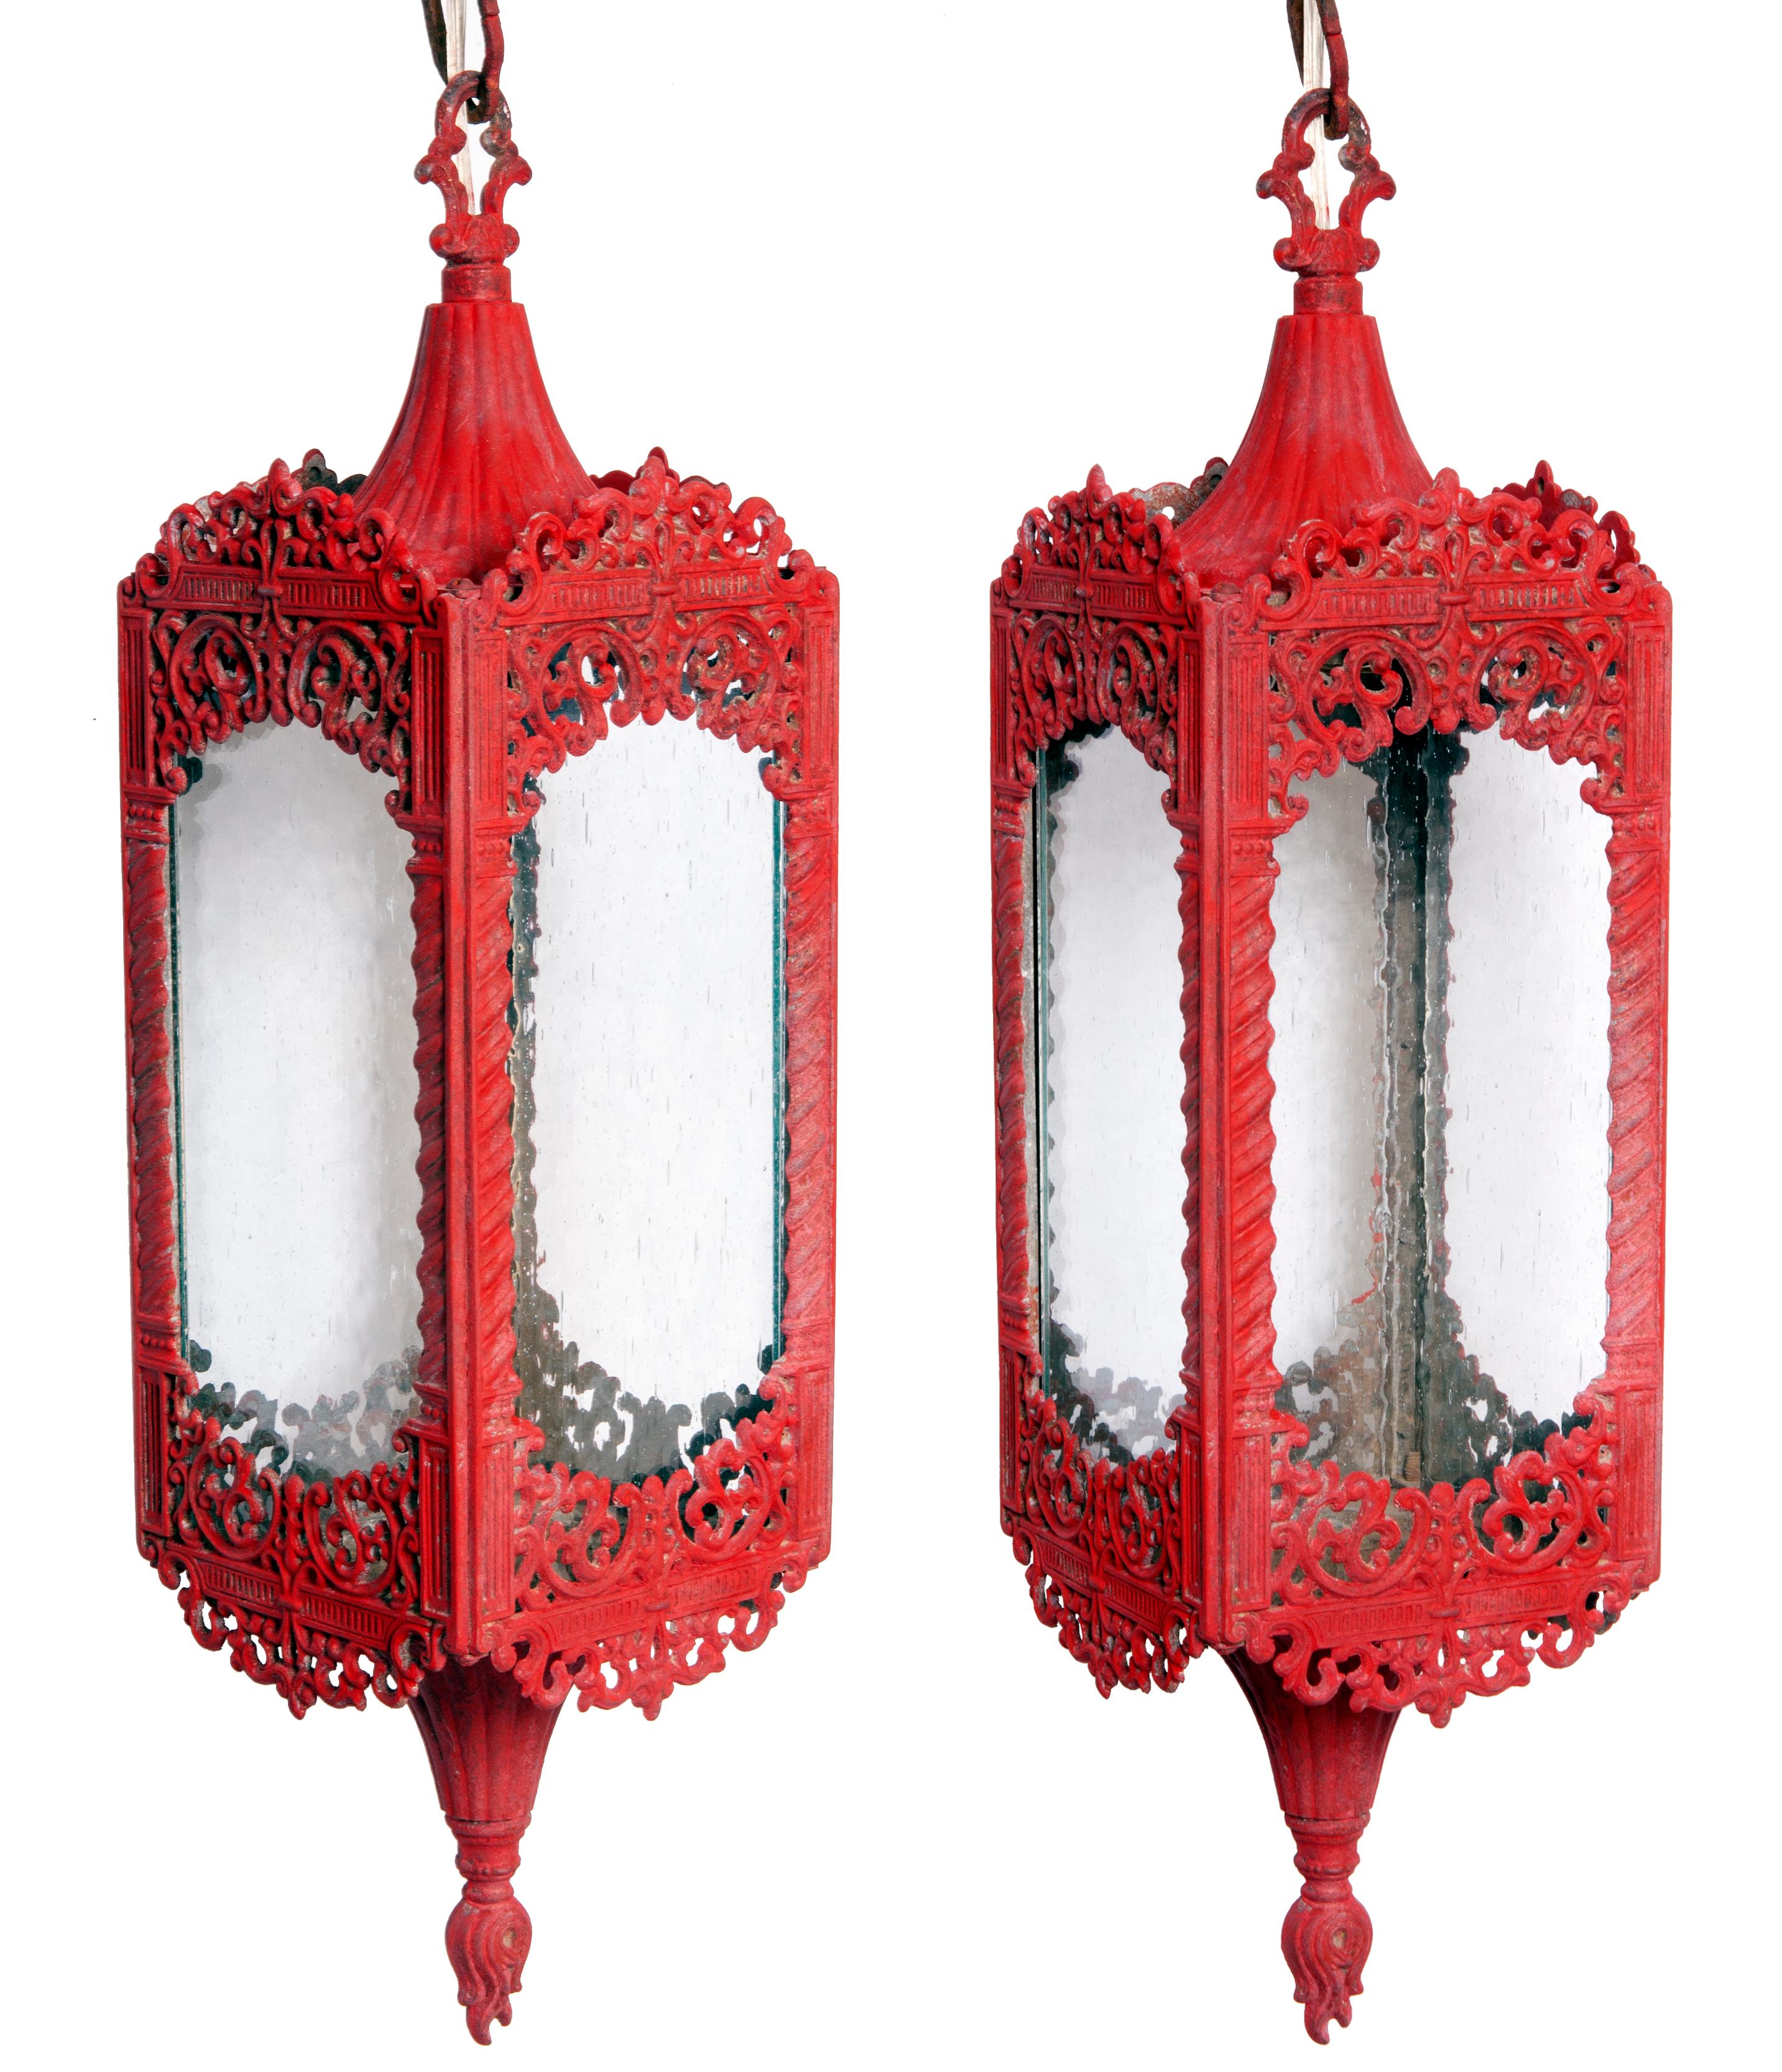 Lanternes suspendues de style mauresque du milieu du siècle avec panneaux en verre clair et chaîne d'origine. 
Les lanternes sont disponibles en rouge de Chine ou en noir mat.
Les lanternes sont ornées de volutes métalliques complexes.
Restauré et